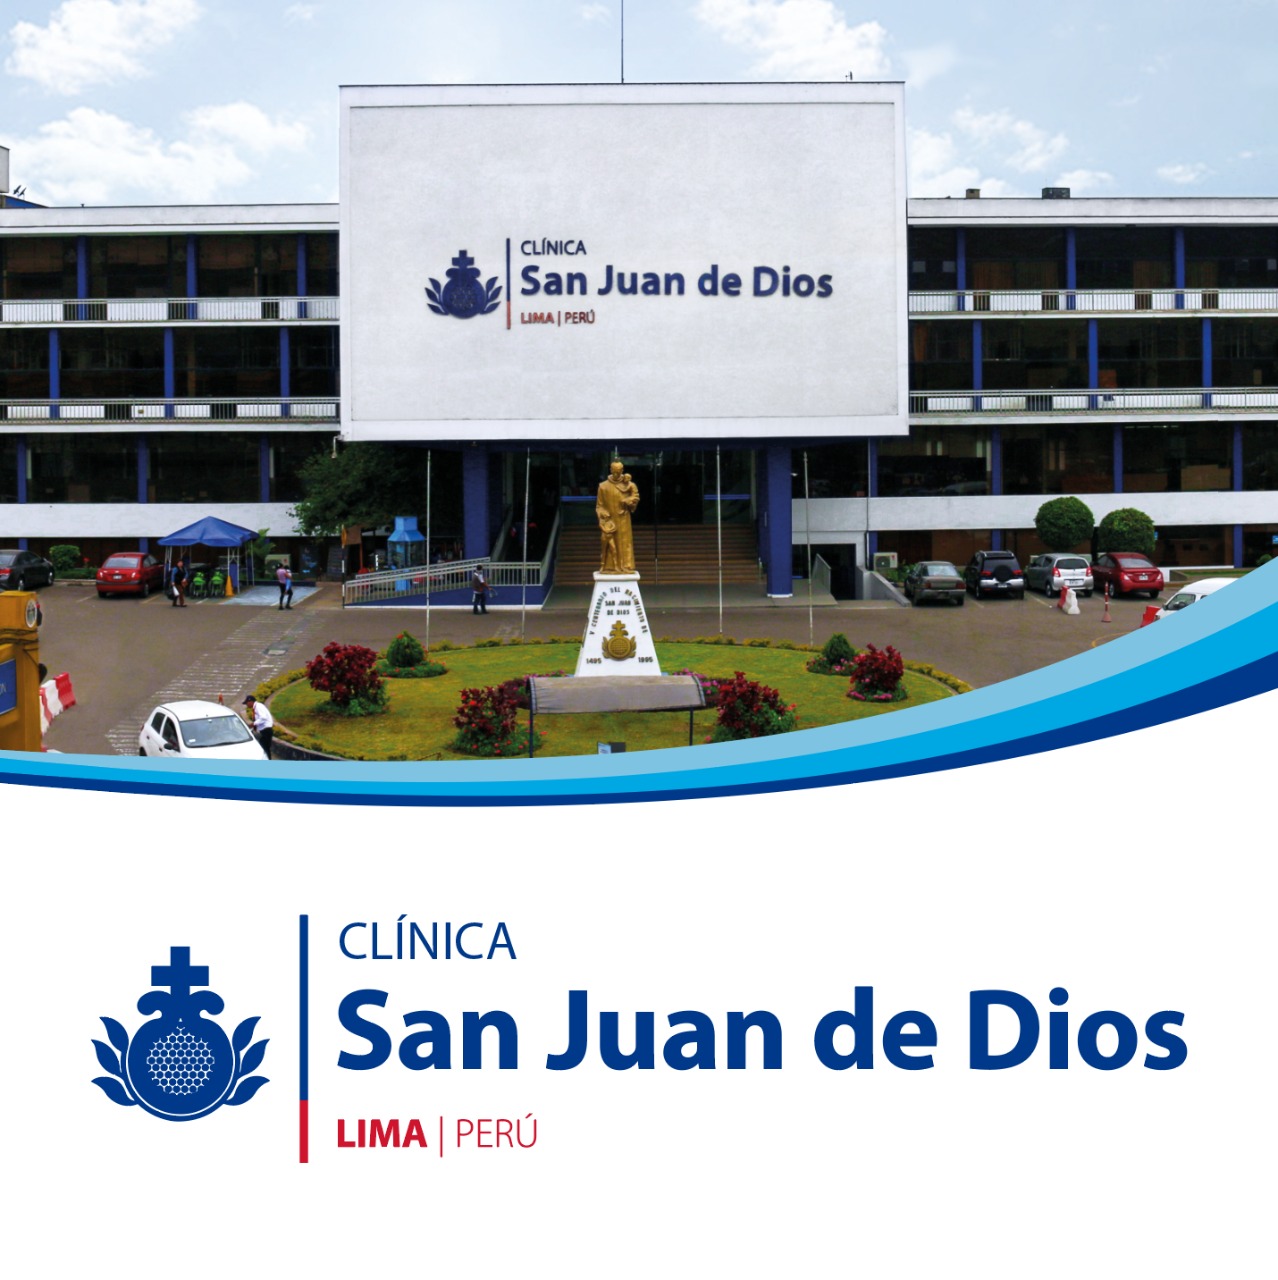 Centro Peru Clinica San Juan de Dios Lima | Orden Hospitalaria San Juan de Dios